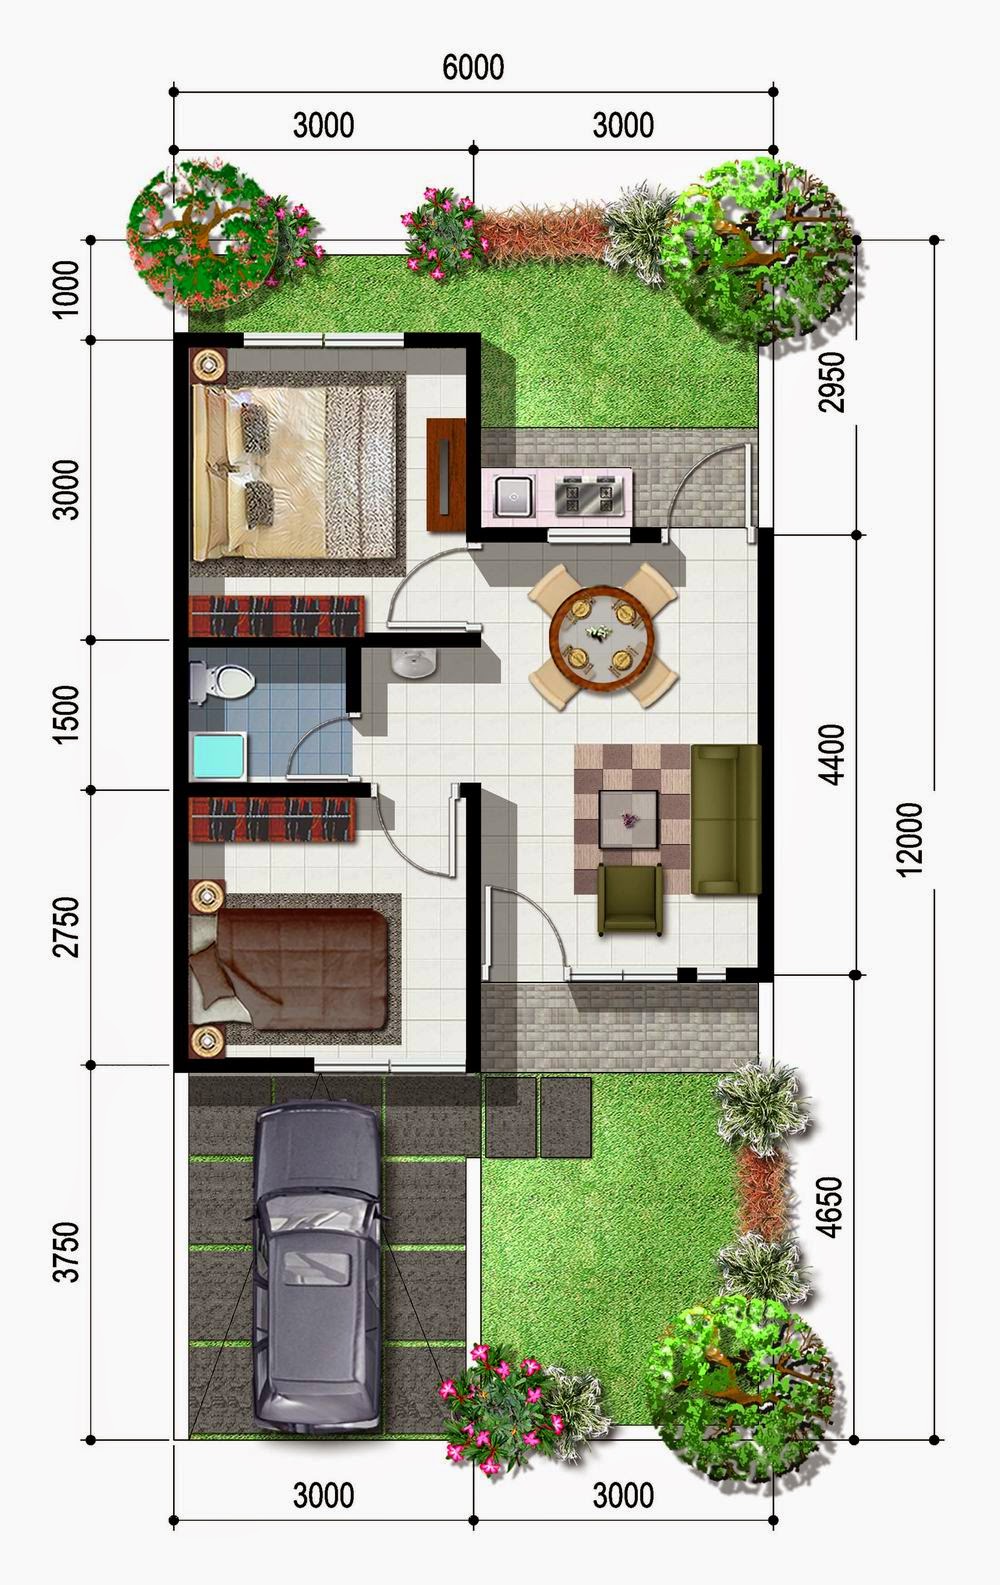 Desain Rumah Minimalis Jadul : Rumah Minimalis Modern Satu Lantai Dilahan Luas Maupun ... : Kumpulan gambar desain model rumah minimalis tampak depan, hunian idaman masa kini, termasuk denah rumah minimalis 1 dan 2 lantai, modern & sederhana.